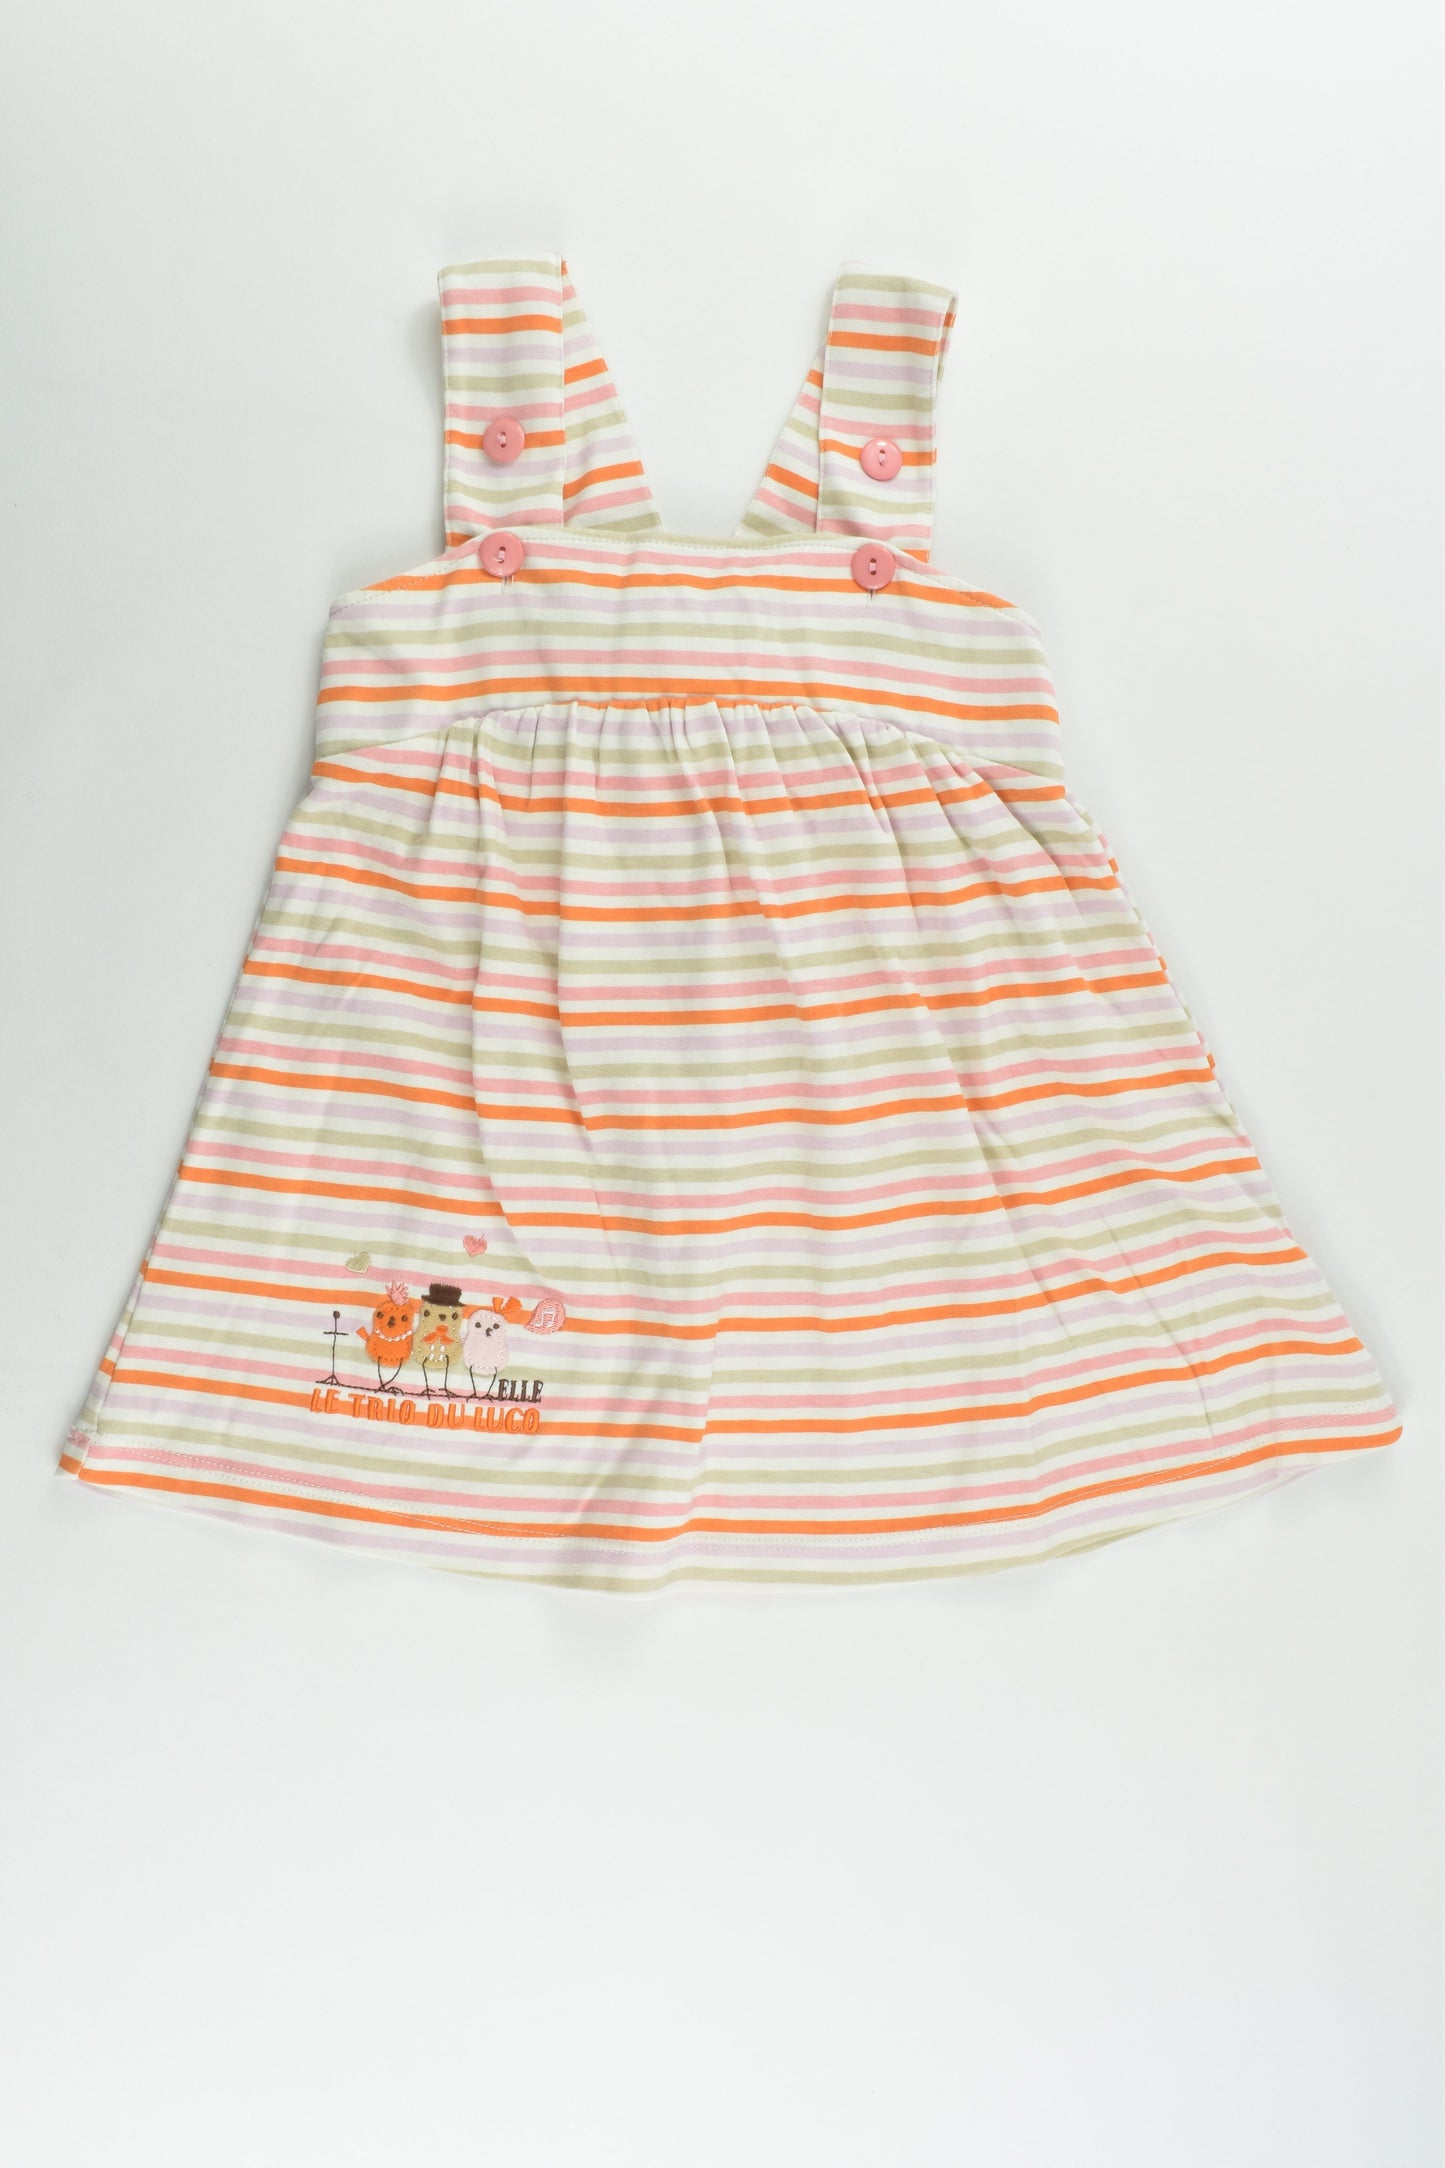 Elle Size 2-3 (100 cm) 'Le Trio Du Luco' Striped Dress